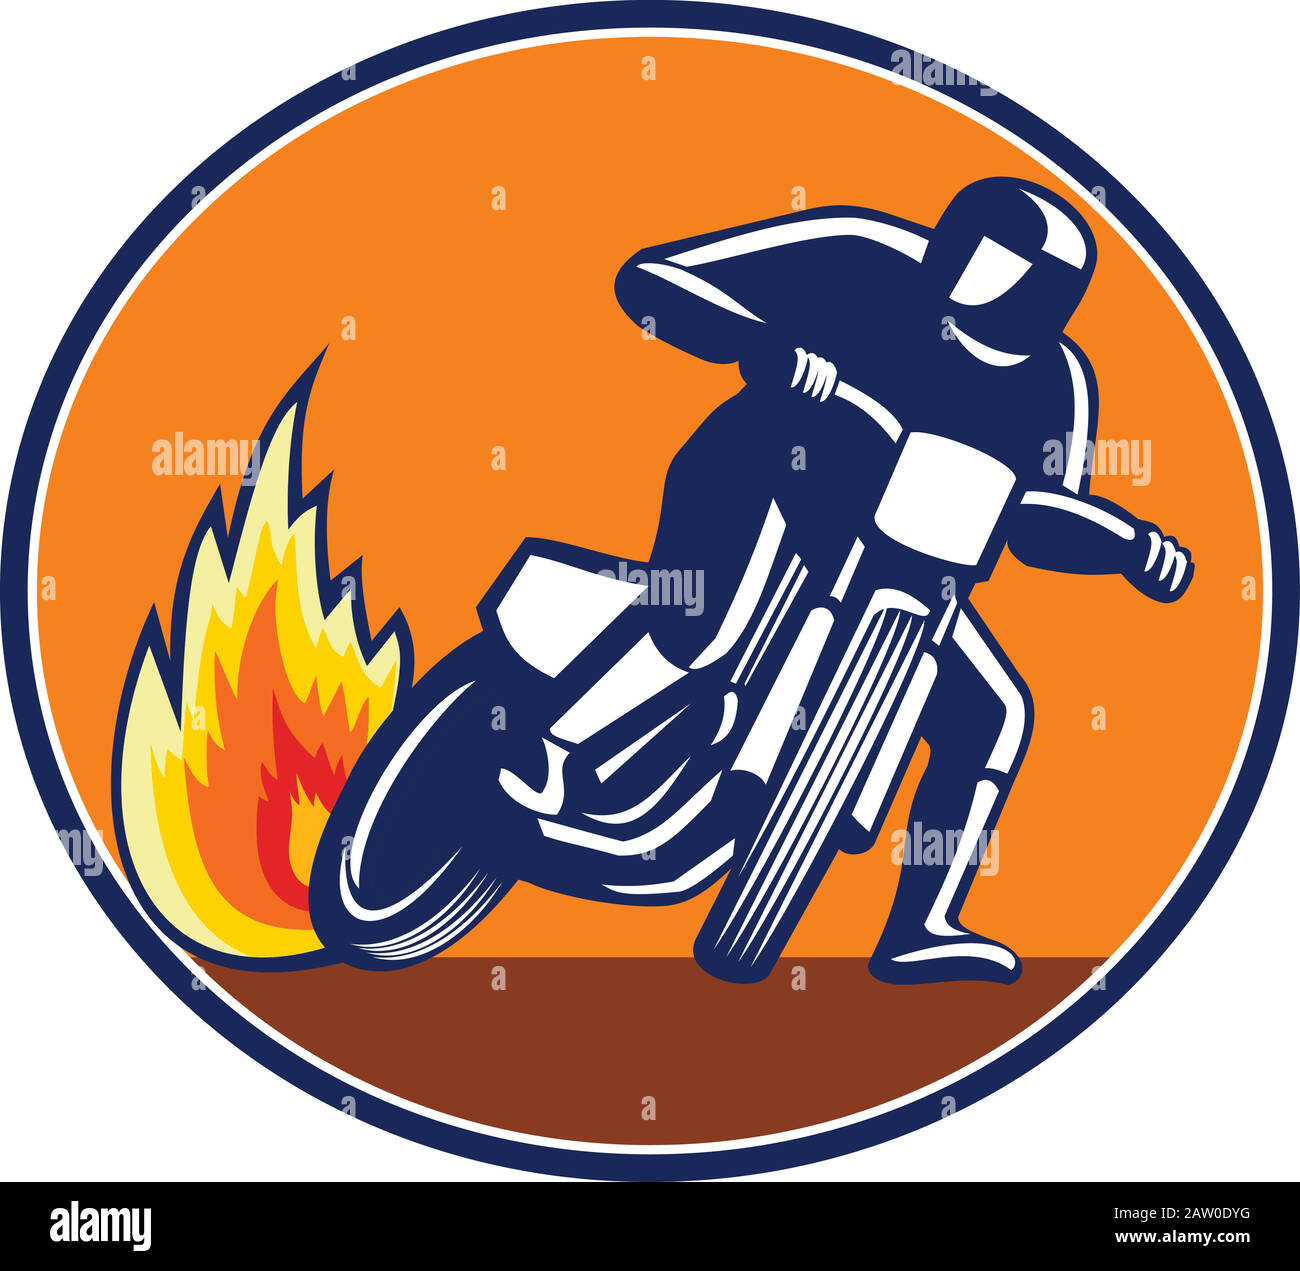 Icona Mascot illustrazione di una moto motociclista, pista piatta o pista sterrata vista dalla parte anteriore impostata in forma ovale su isolato Illustrazione Vettoriale